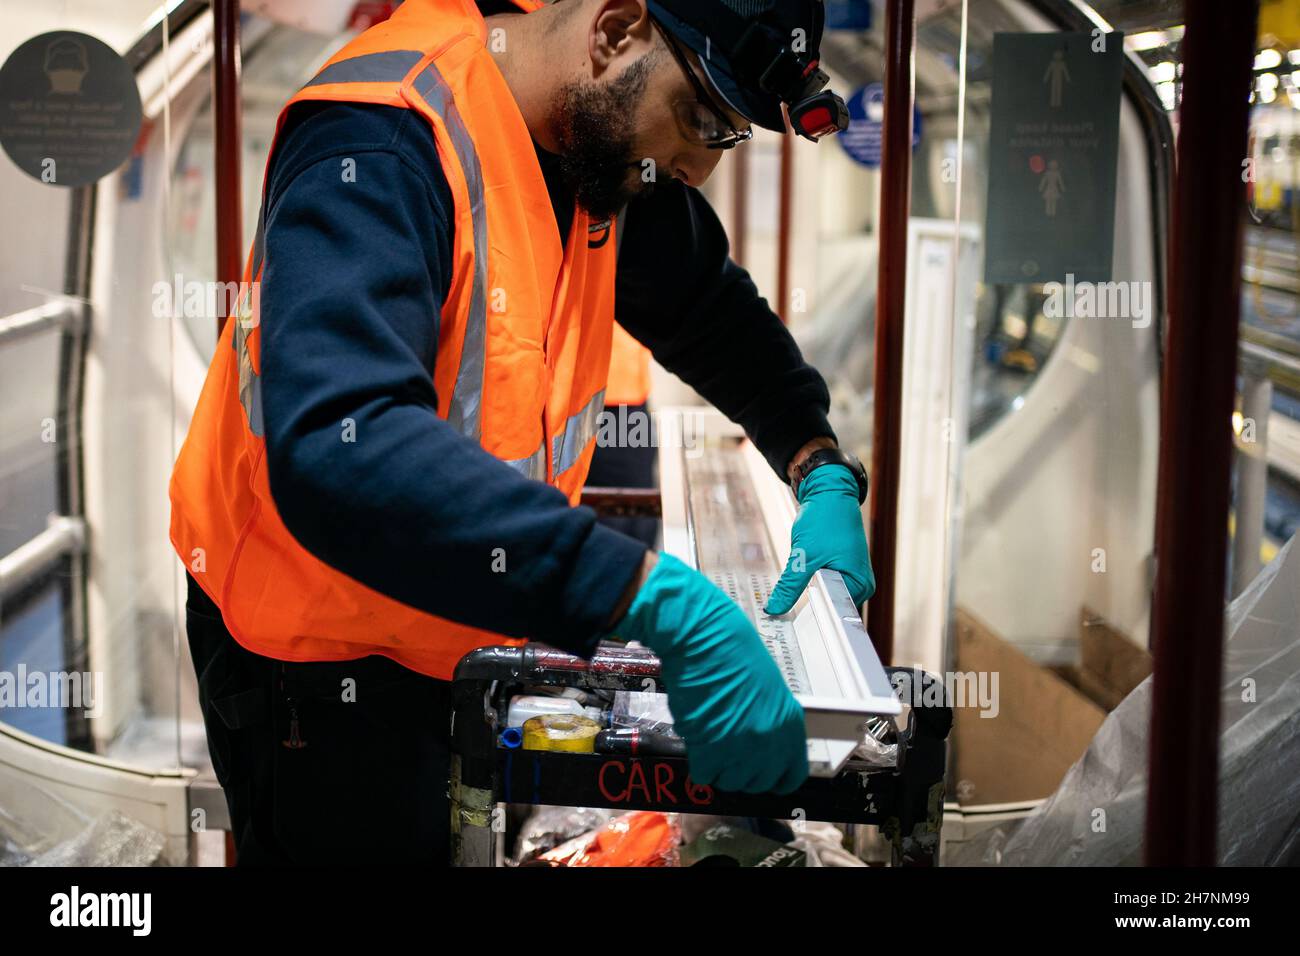 Un agent d'entretien des trains équipe les trains avec un changement de lumière LED au dépôt de Stonebridge Park dans le nord de Londres.Date de la photo: Mercredi 24 novembre 2021. Banque D'Images